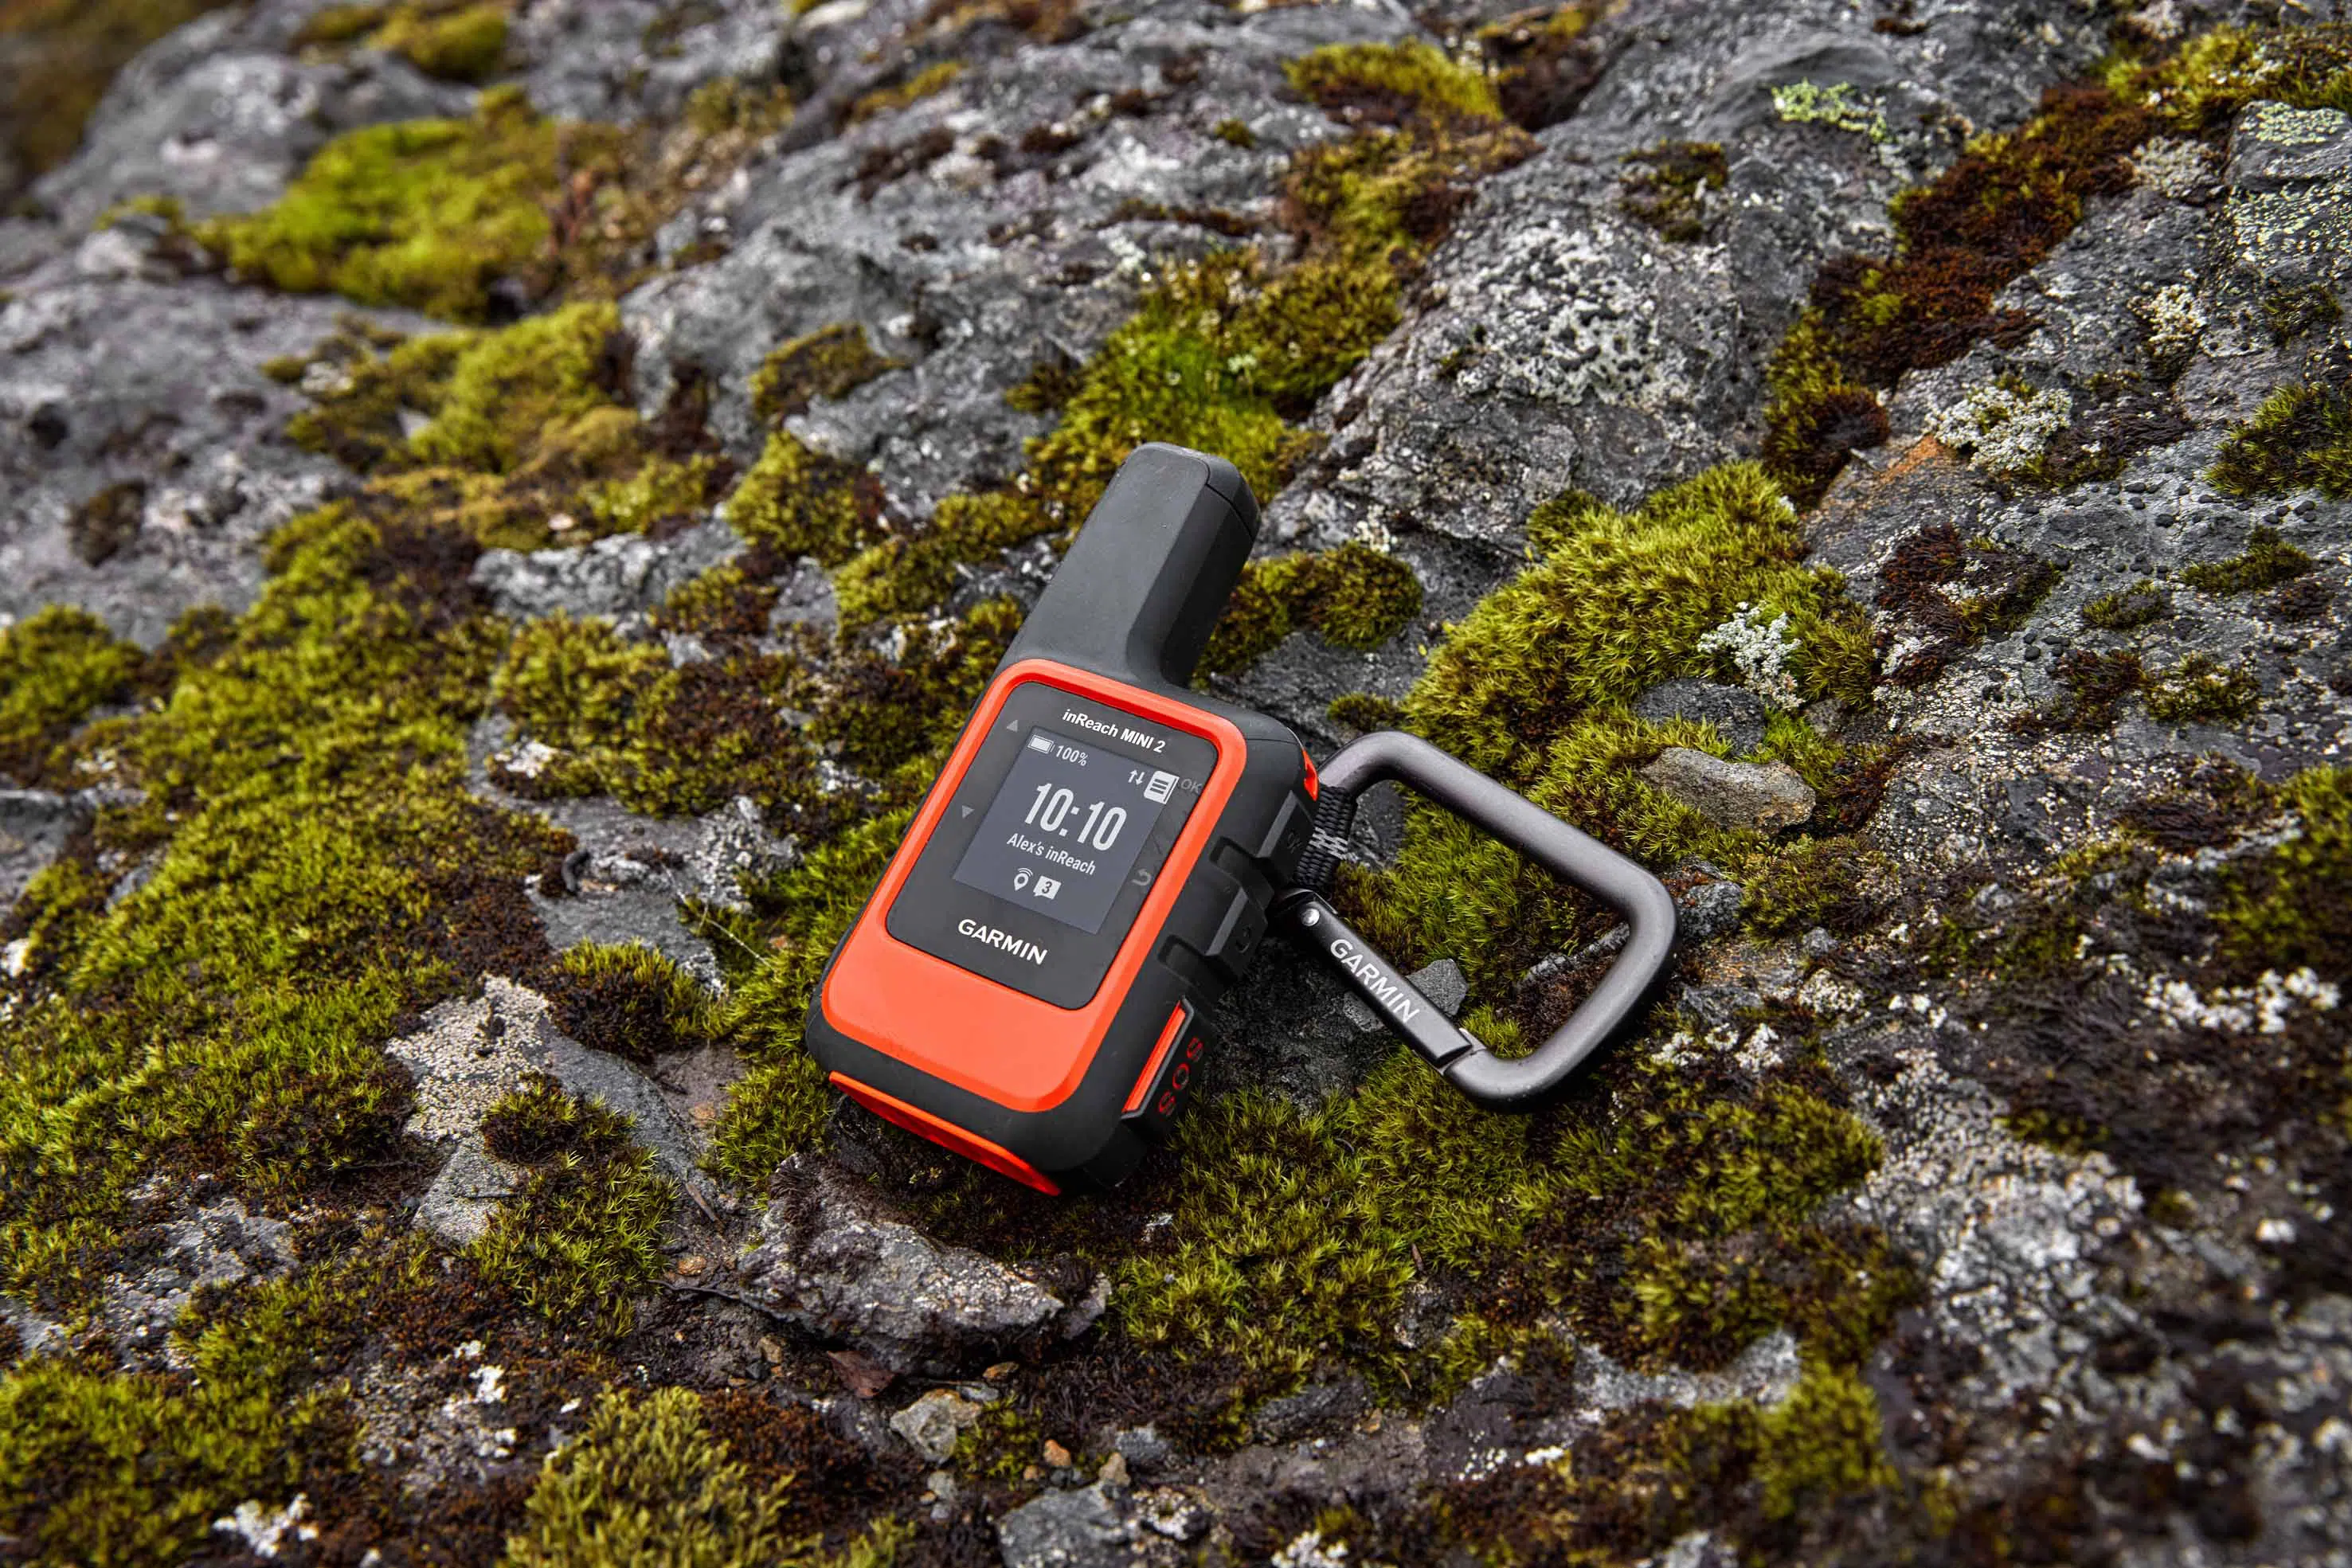 Un dispositivo GPS per maggiore sicurezza in montagna: Garmin inReach Mini 2 thumbnail